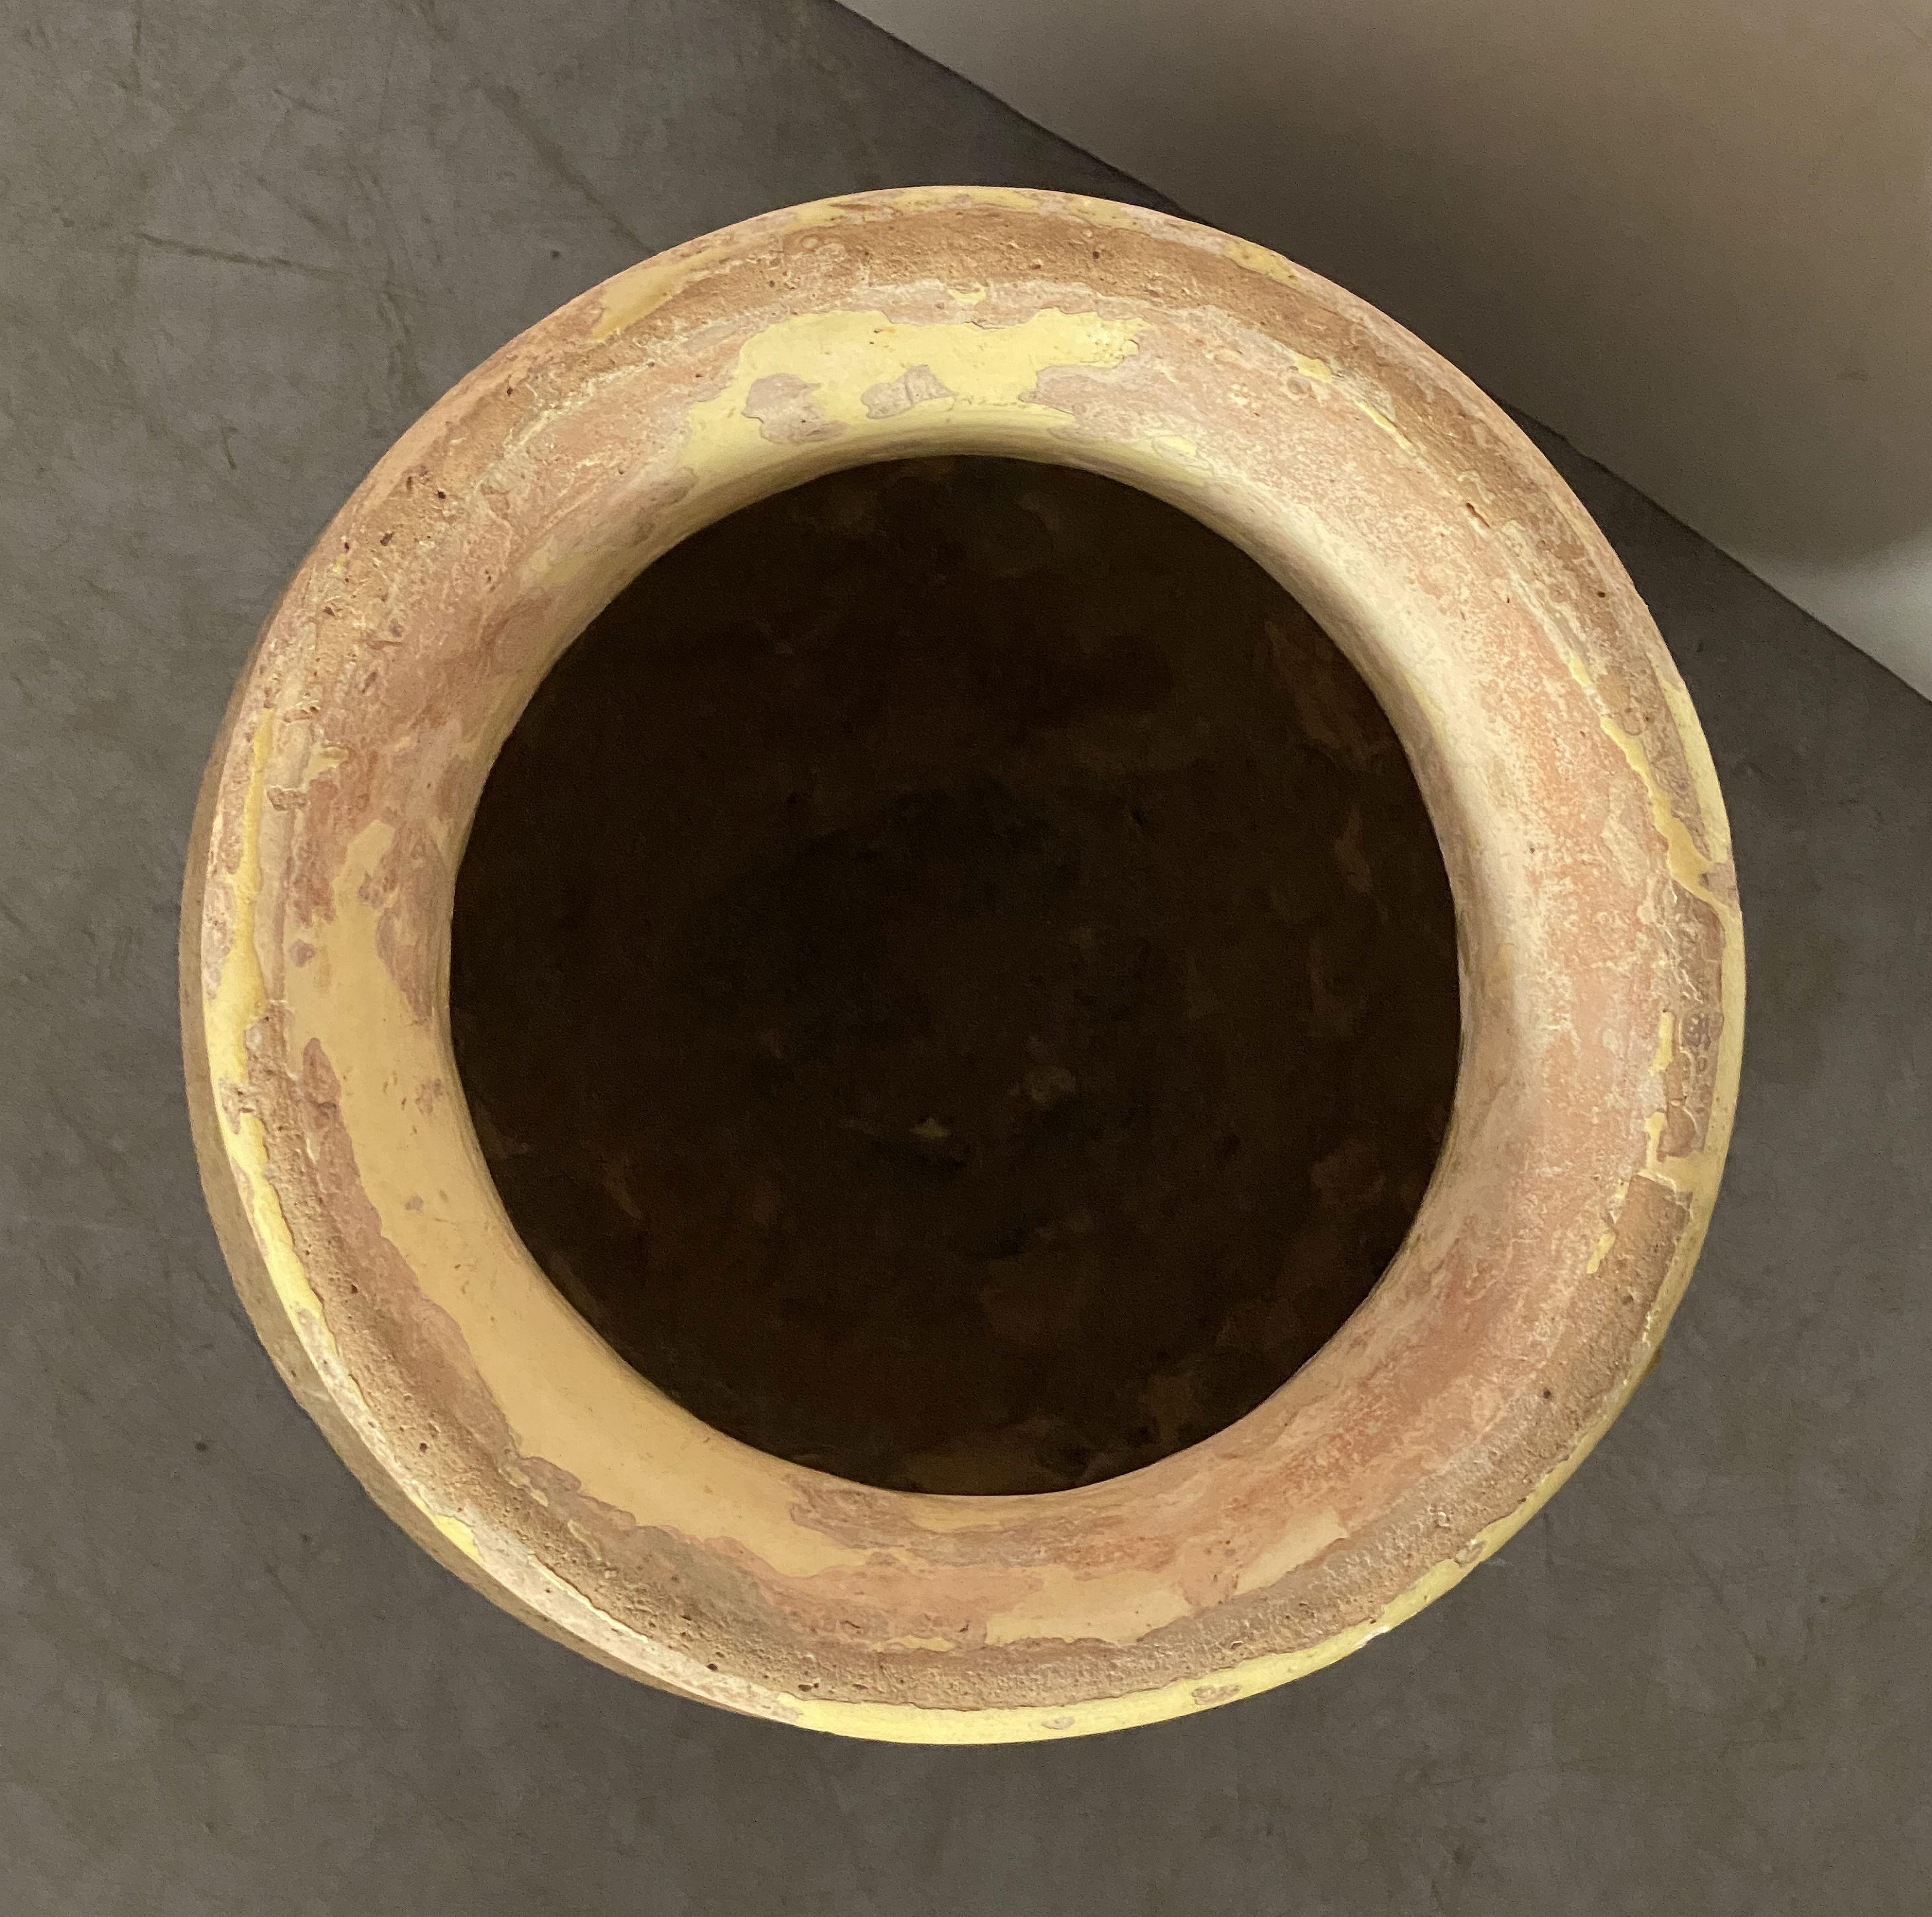 Earthenware Biot Garden Urn or Oil Jar from France